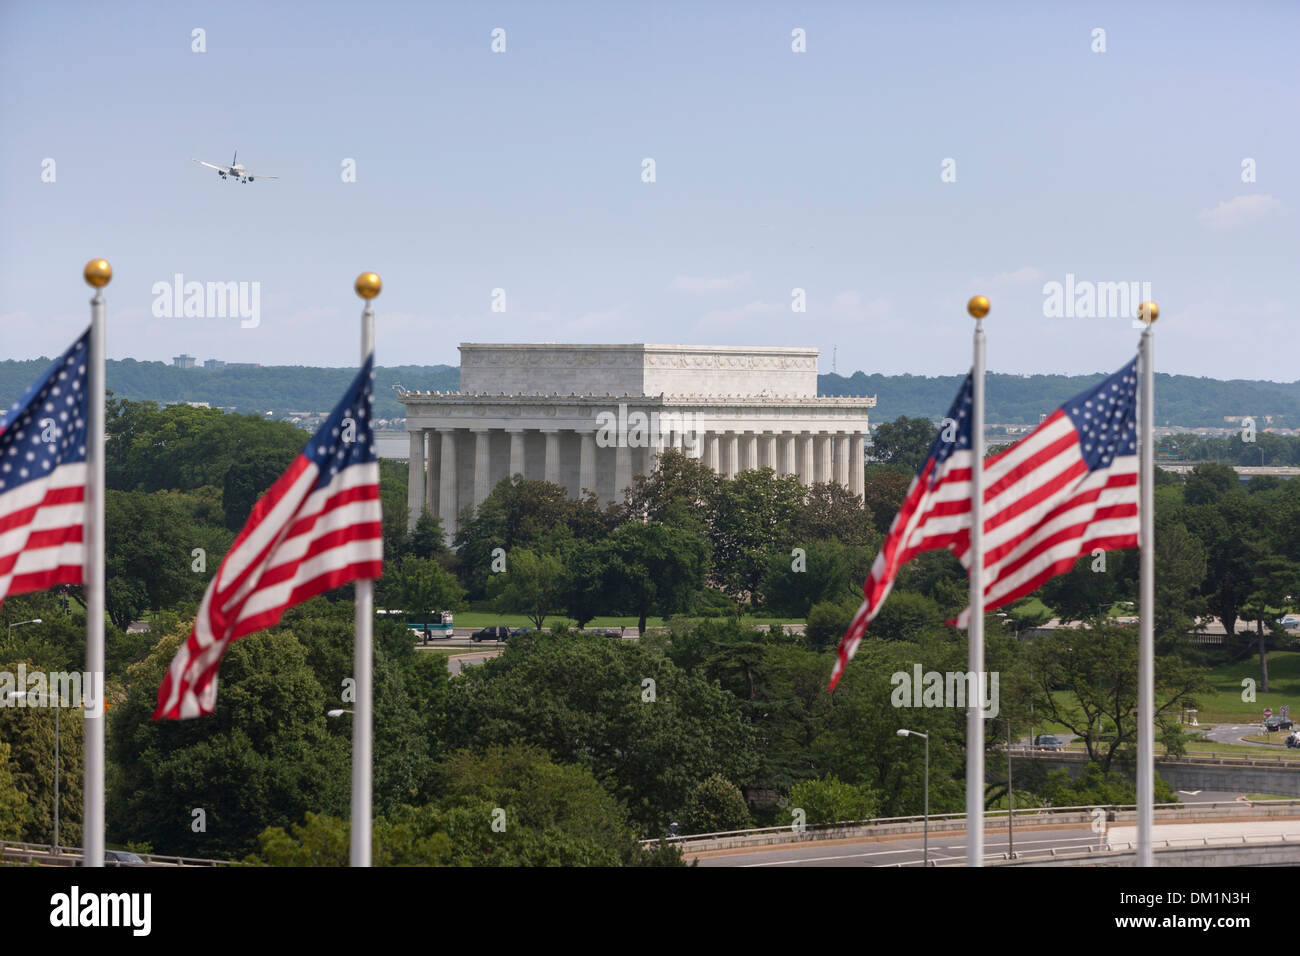 El Lincoln Memorial y banderas estadounidenses como se ve desde el Kennedy Center for the Performing Arts. Foto de stock